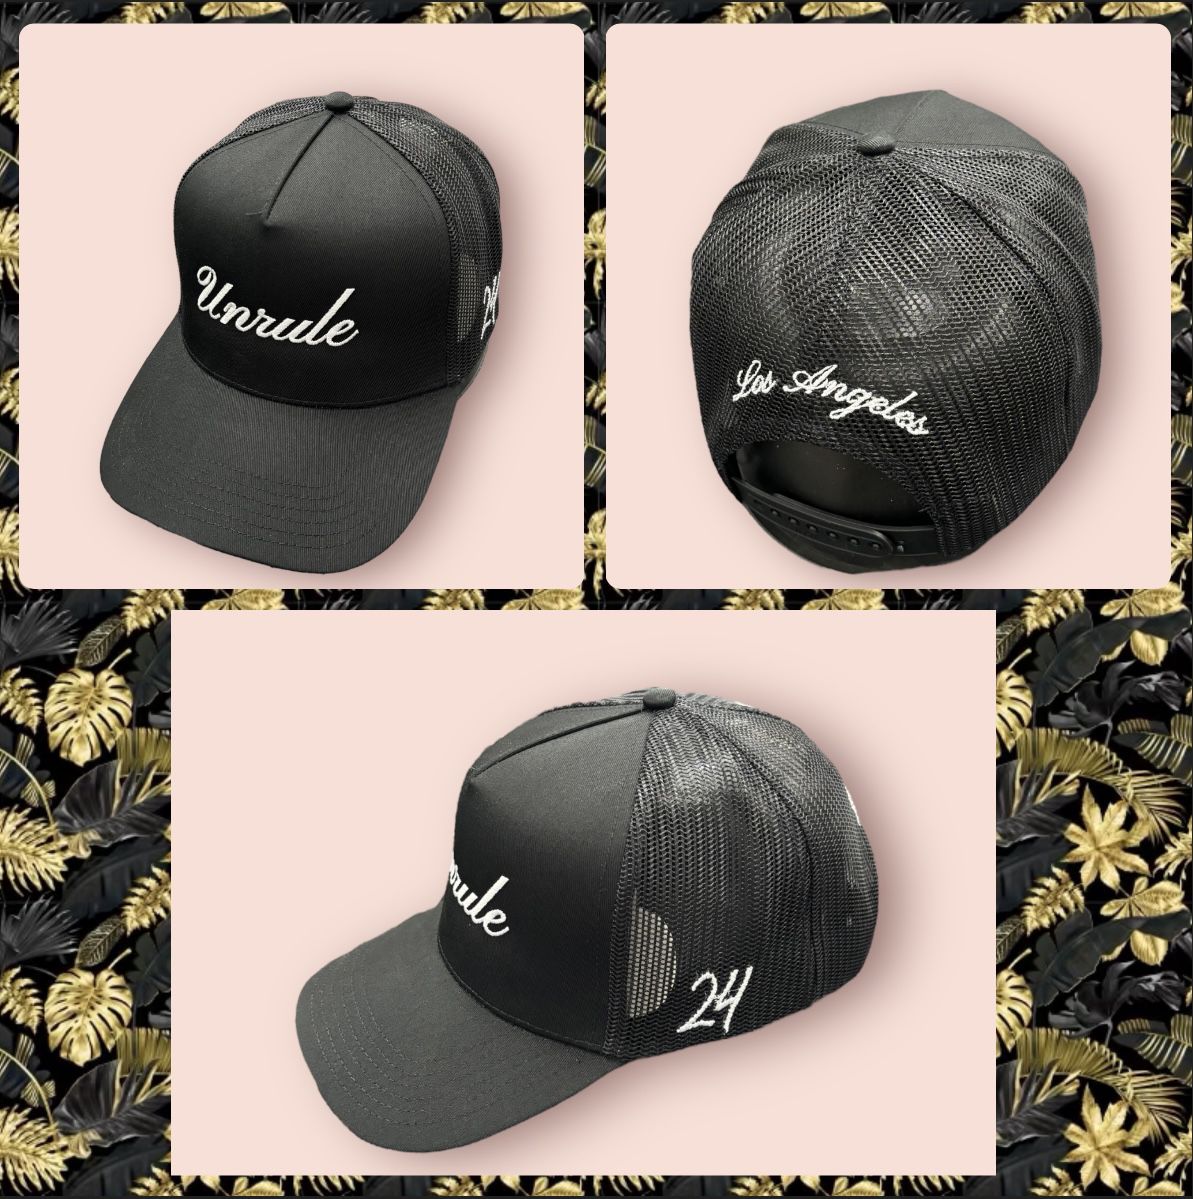 Unrule LA Edition 24’ Trucker Hats